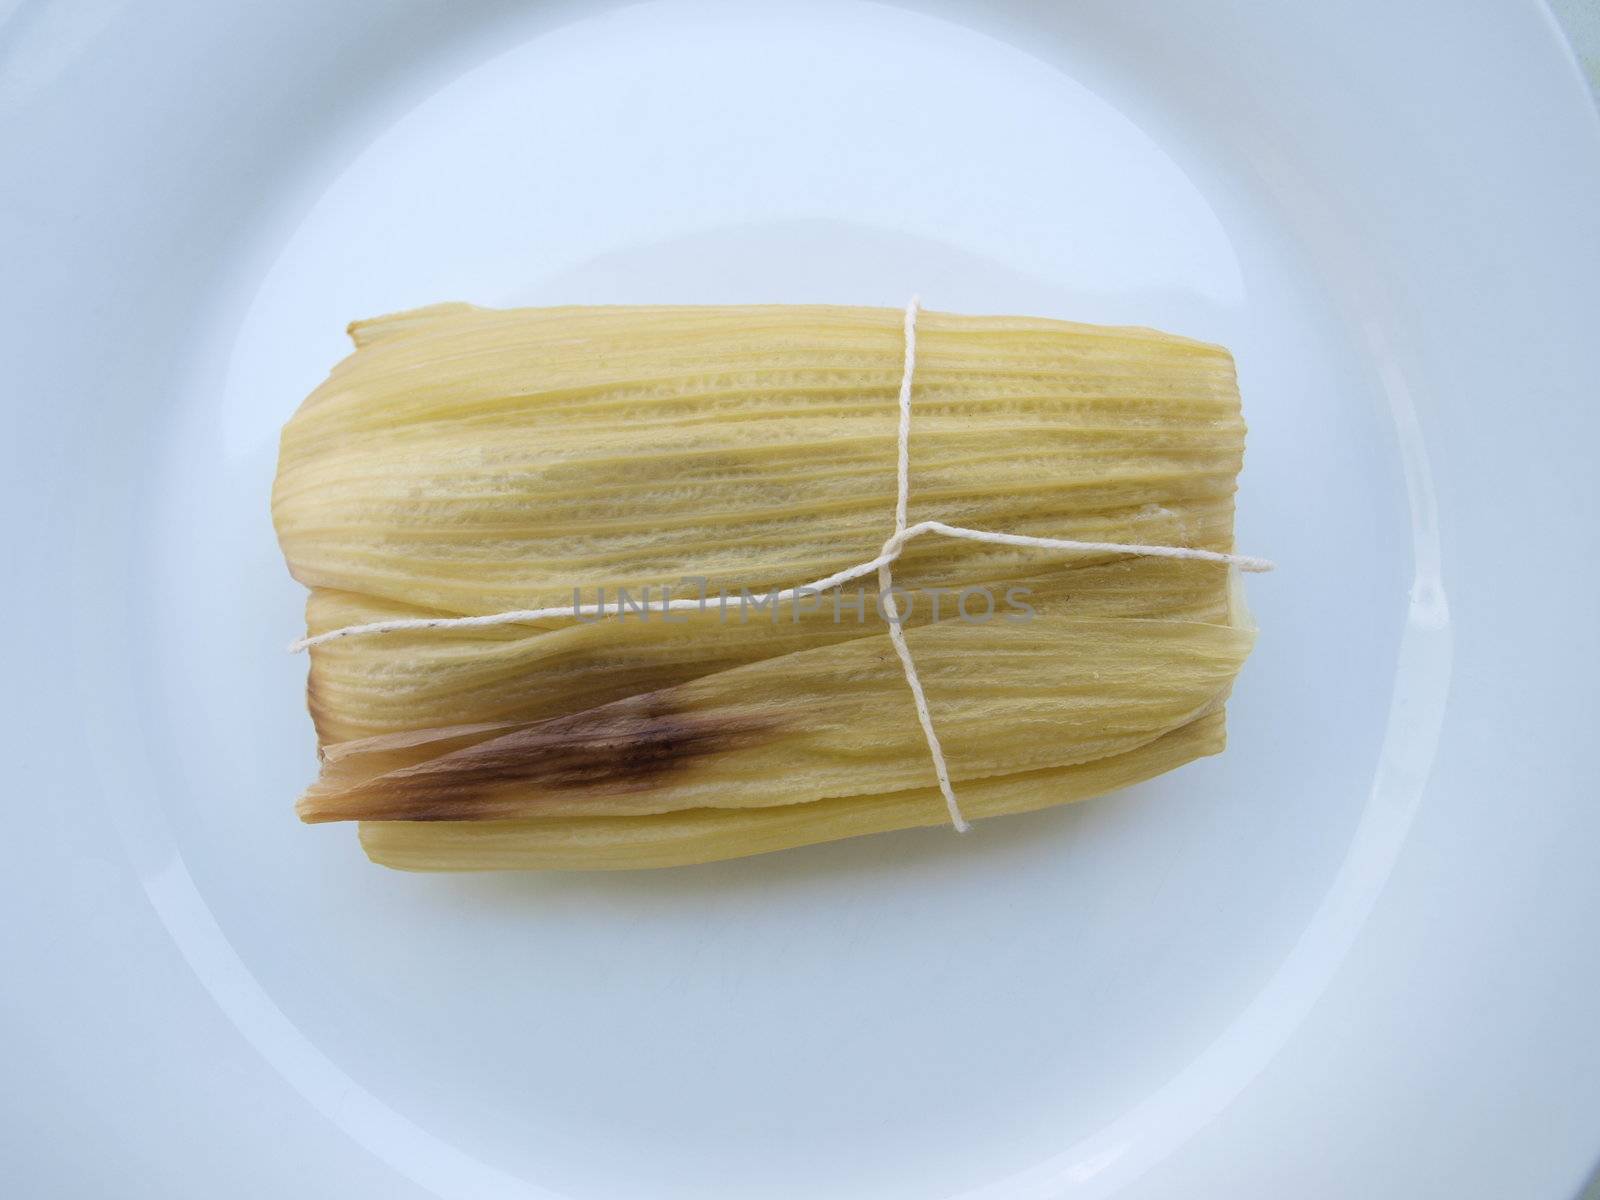 Sweet tamale, a traditional Latin American corn wrap